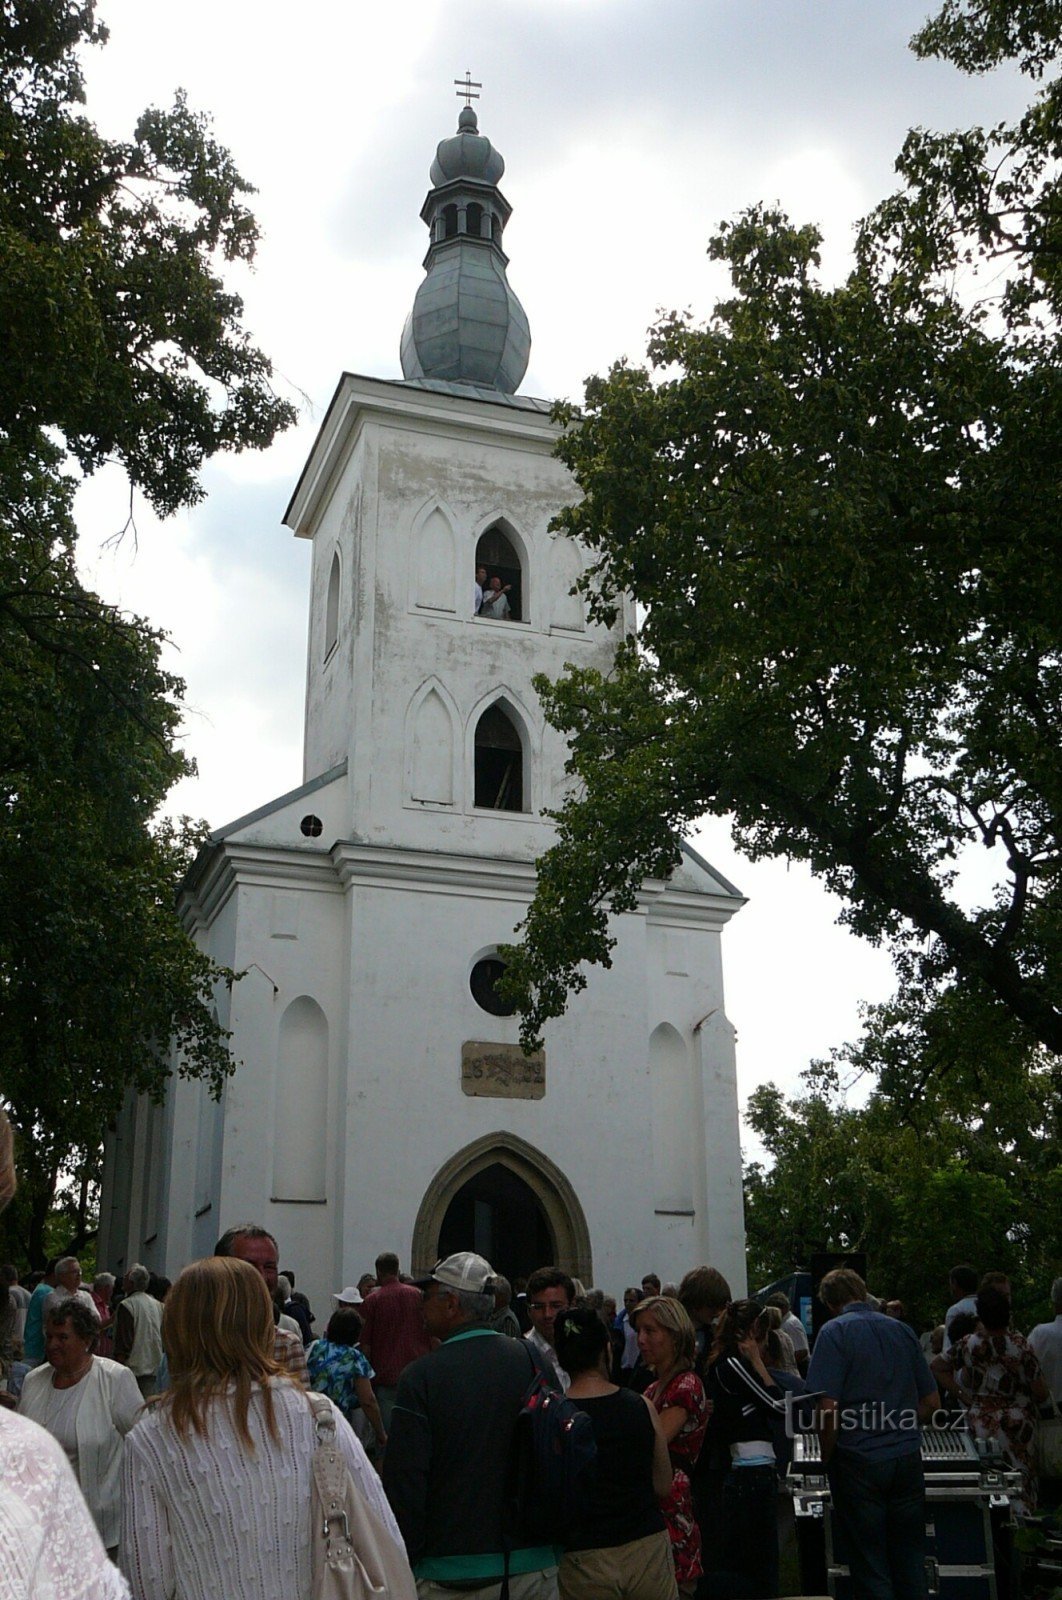 Brdo kod crkve sv. Jakuba nad Ivančicama hodočašće je puno ljudi